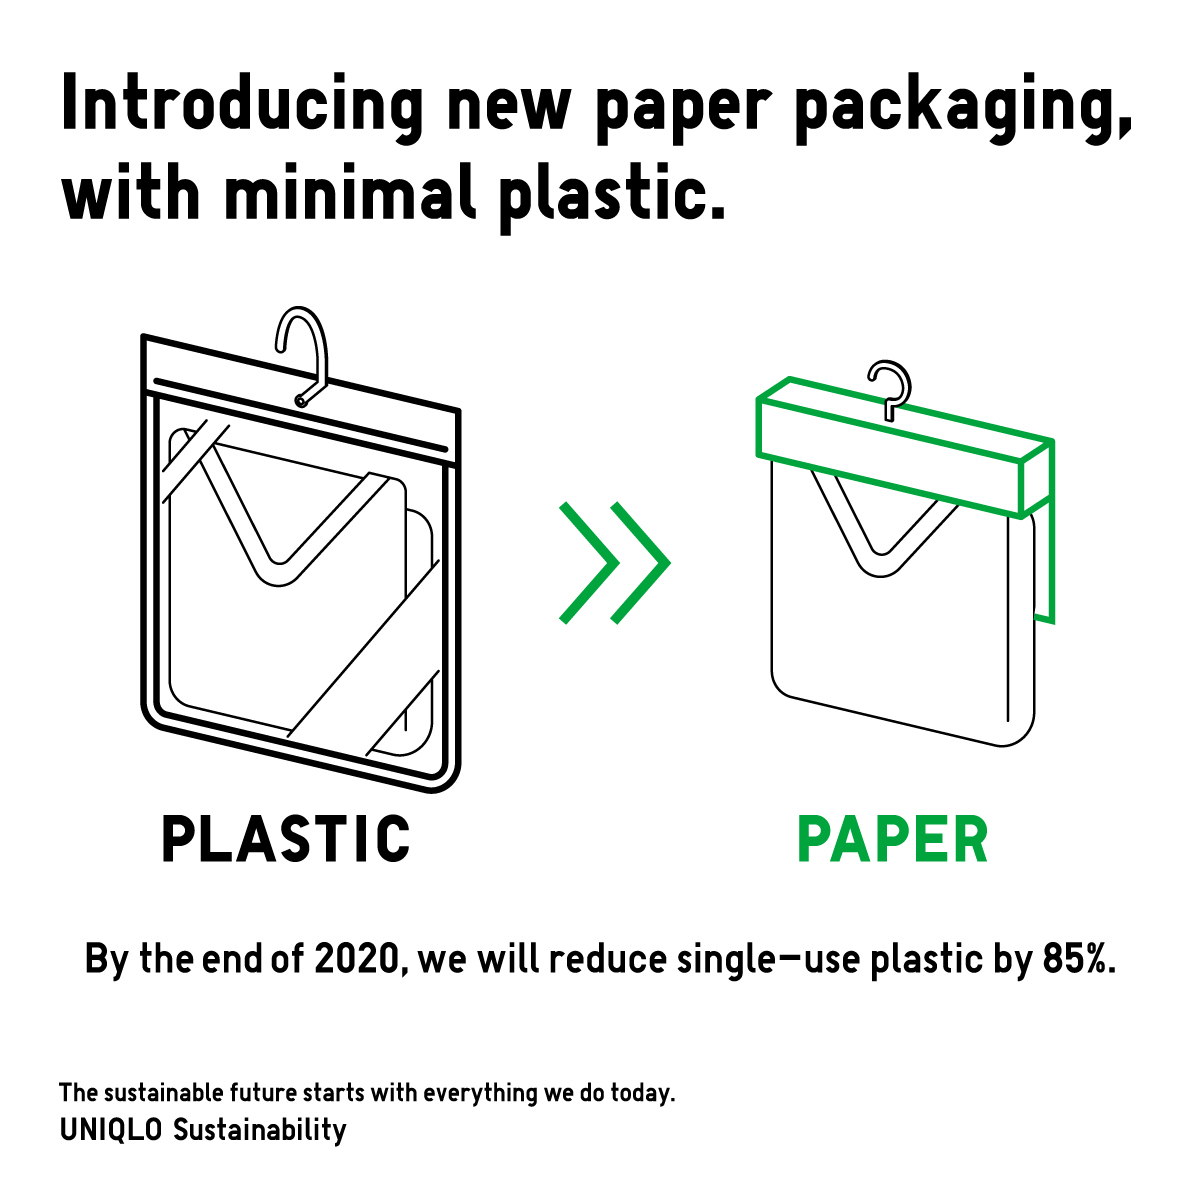 优衣库旗下的包装从原本塑料转换成纸制包装。-图摘自优衣库马来西亚脸书-